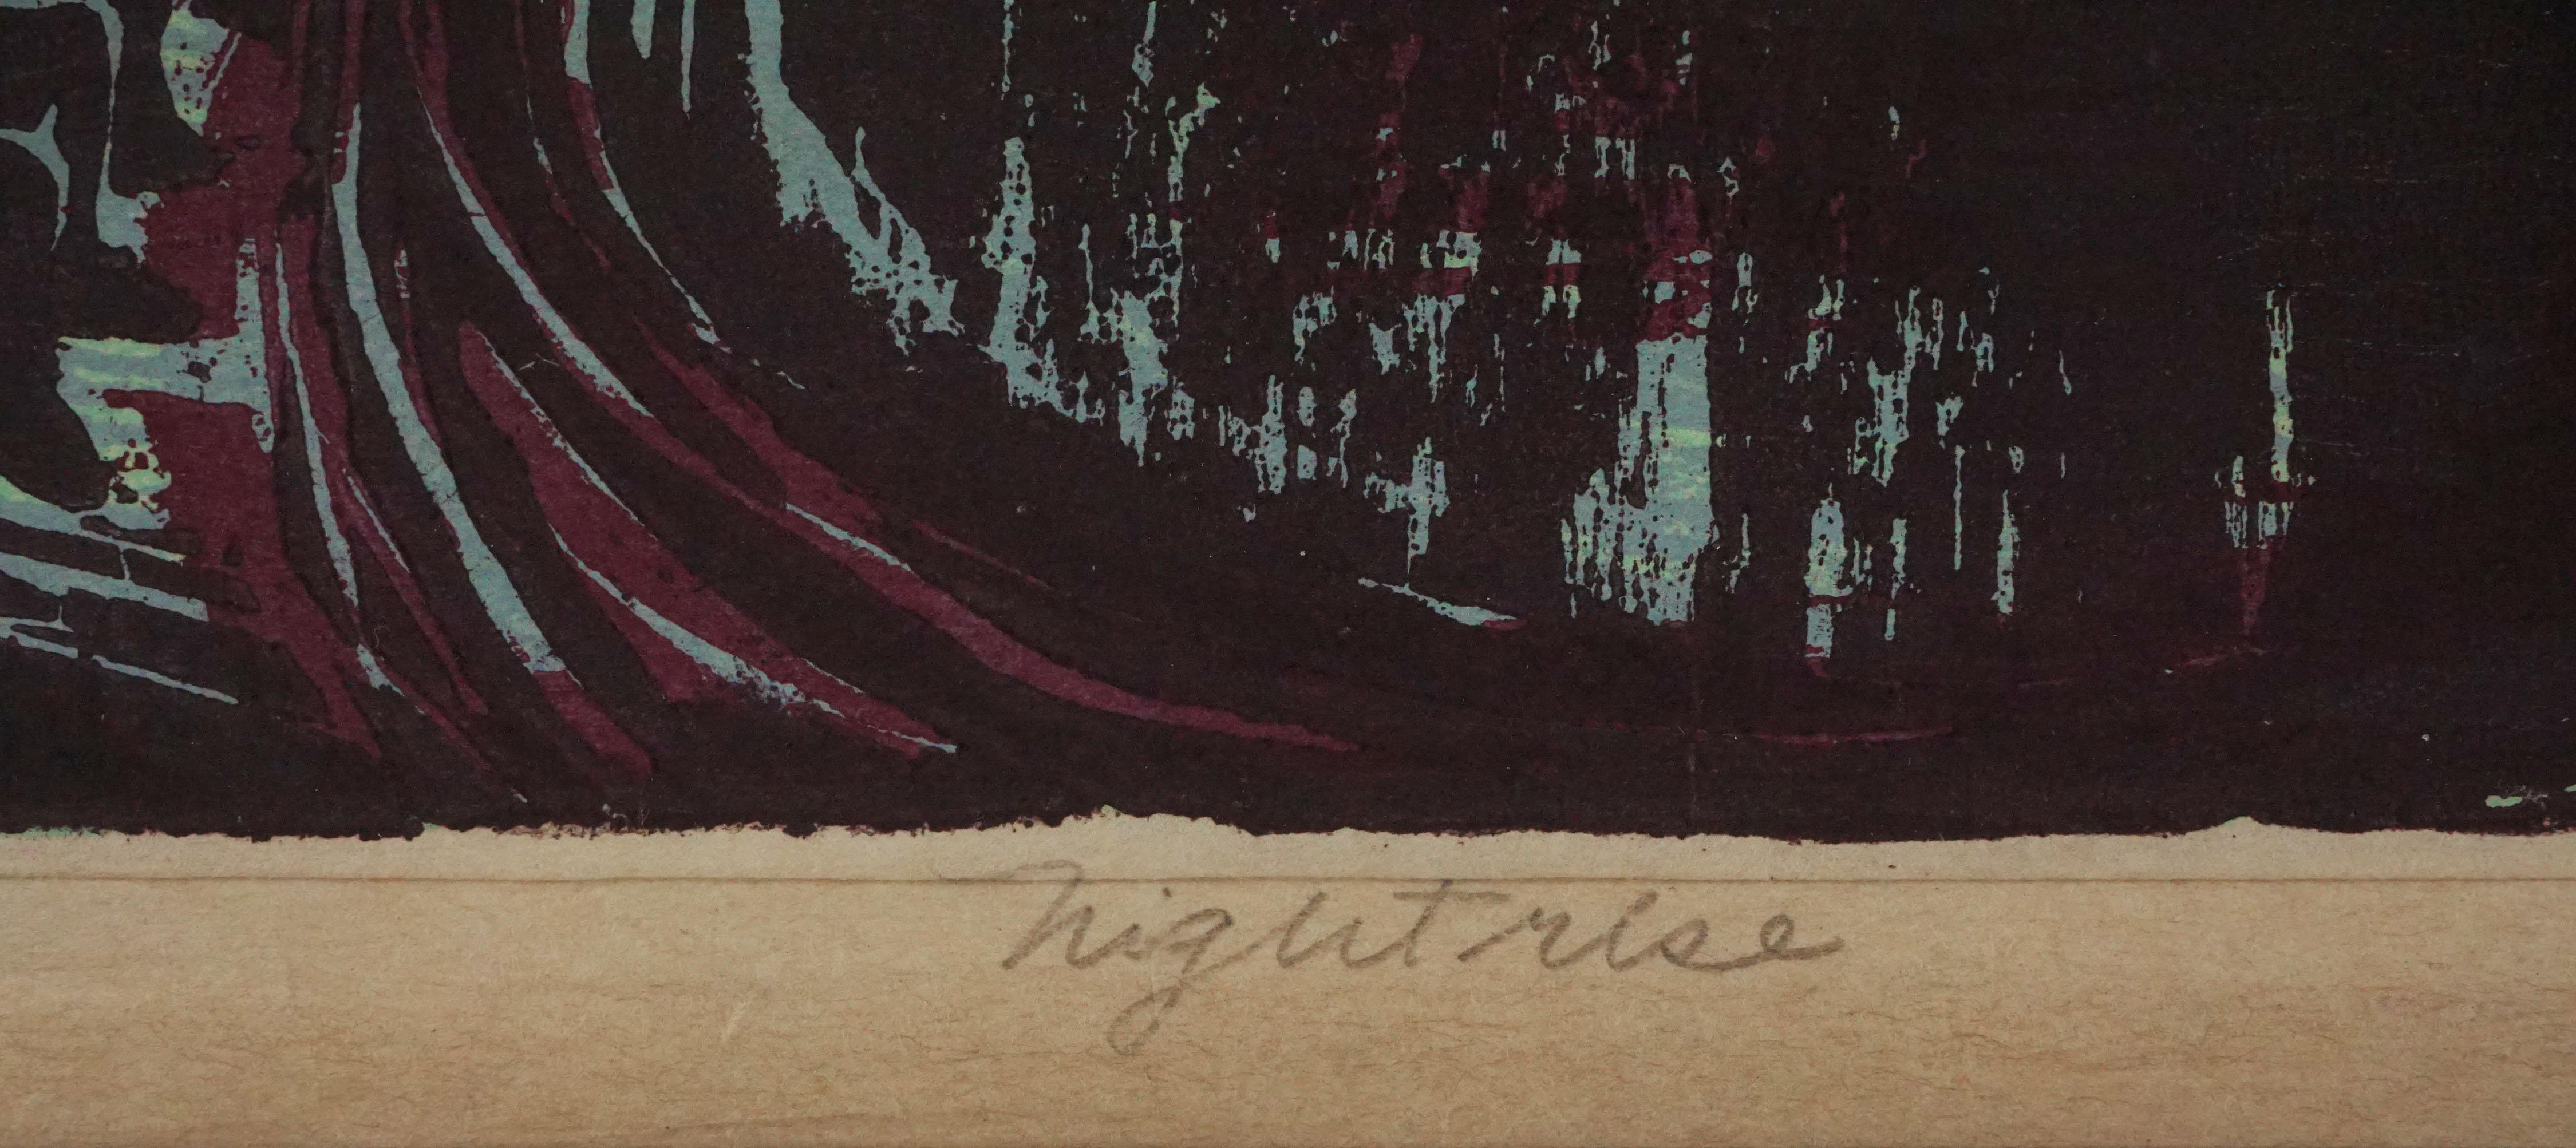 Sérigraphie audacieuse sur bois de Ruth Chaney (Américaine, 1908-1973). Numéroté (#17), titré, signé et daté le long du bord inférieur. Le site  Le Smithsonian American Art Museum possède une édition de cette pièce qui fait partie de sa collection.